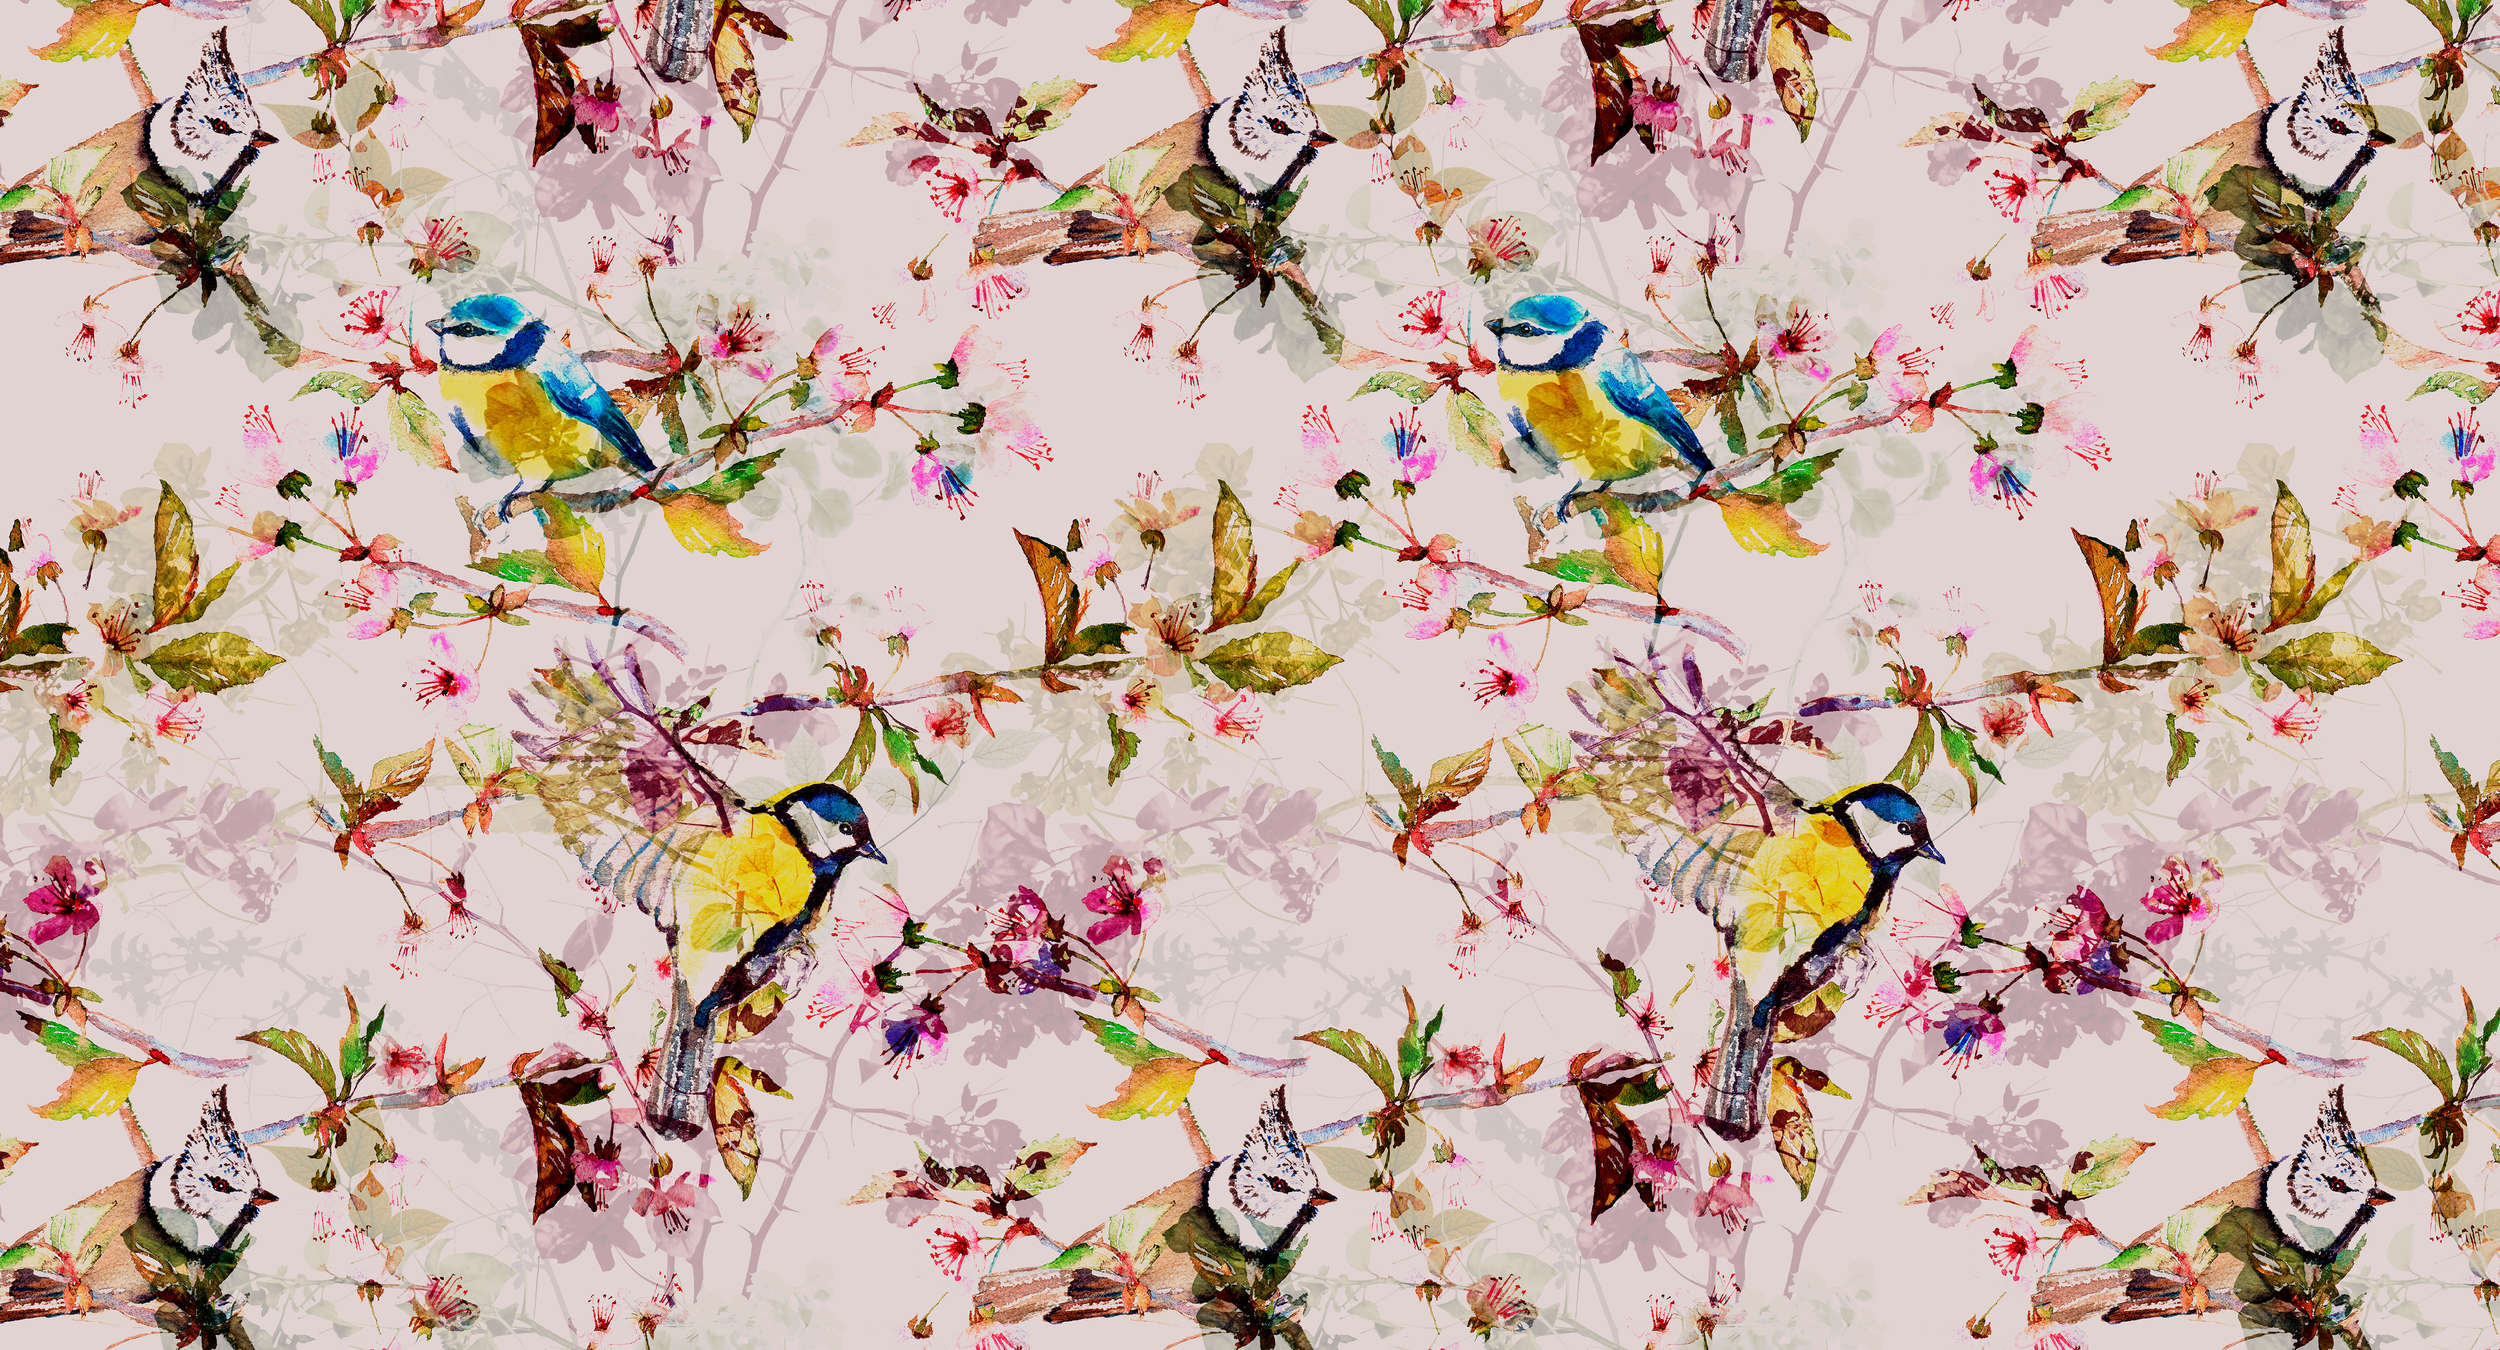             Papier peint oiseaux style collage - rose, jaune
        